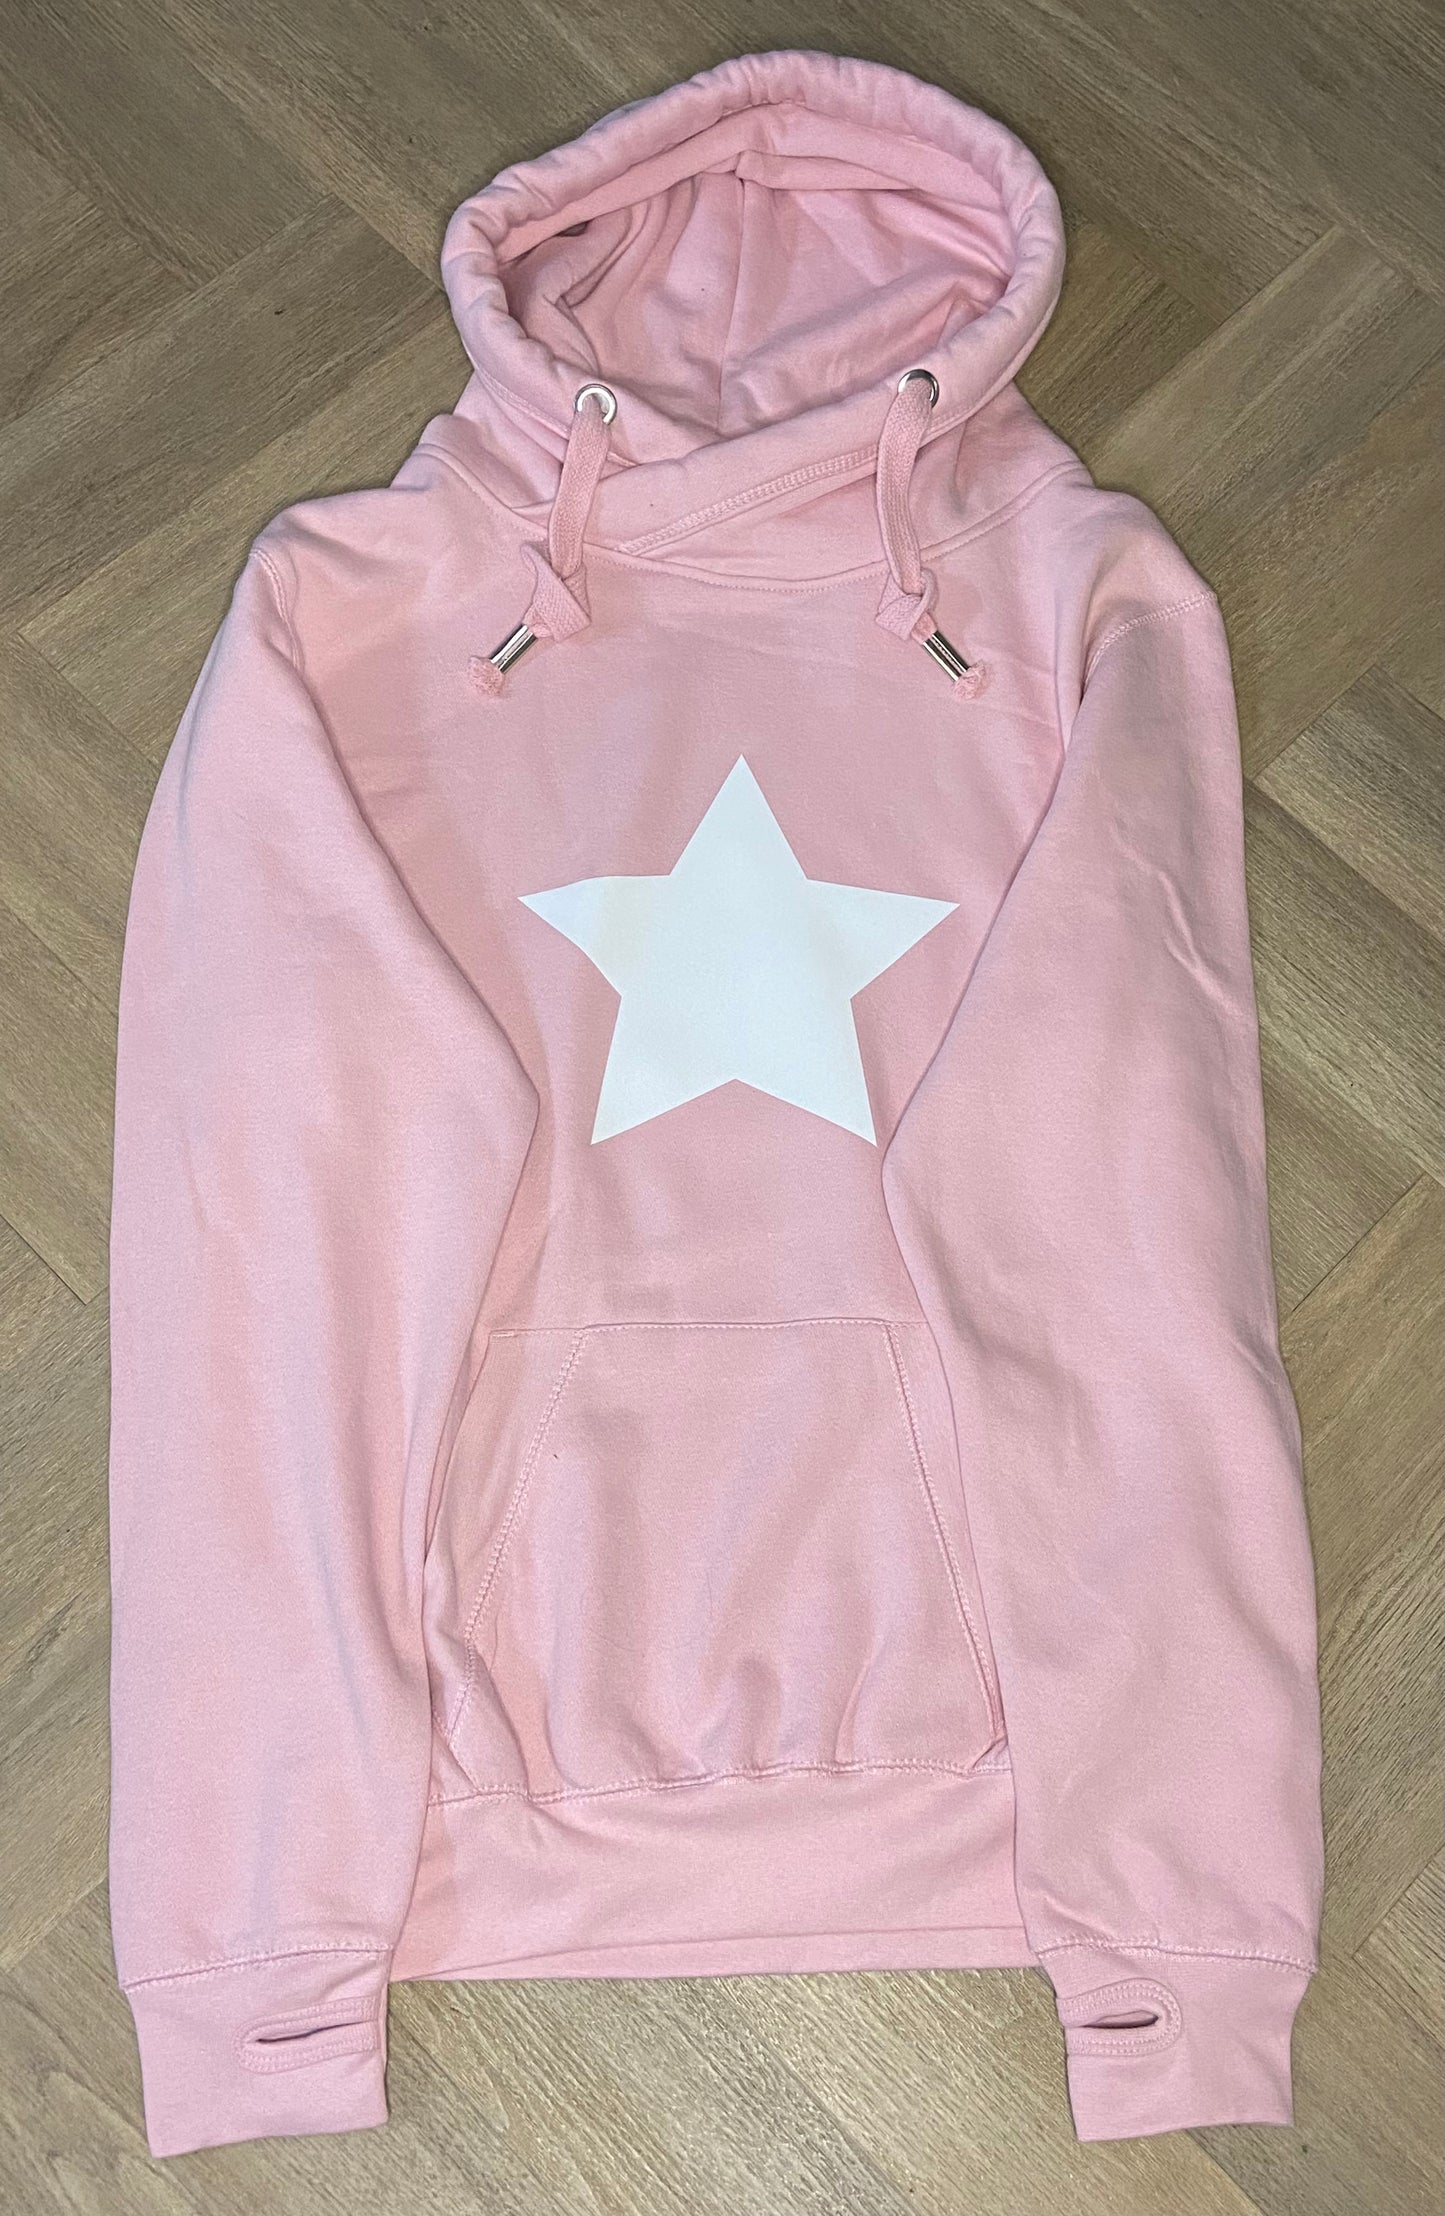 Baby Pink cross neck hoodie personalised with velvet Star